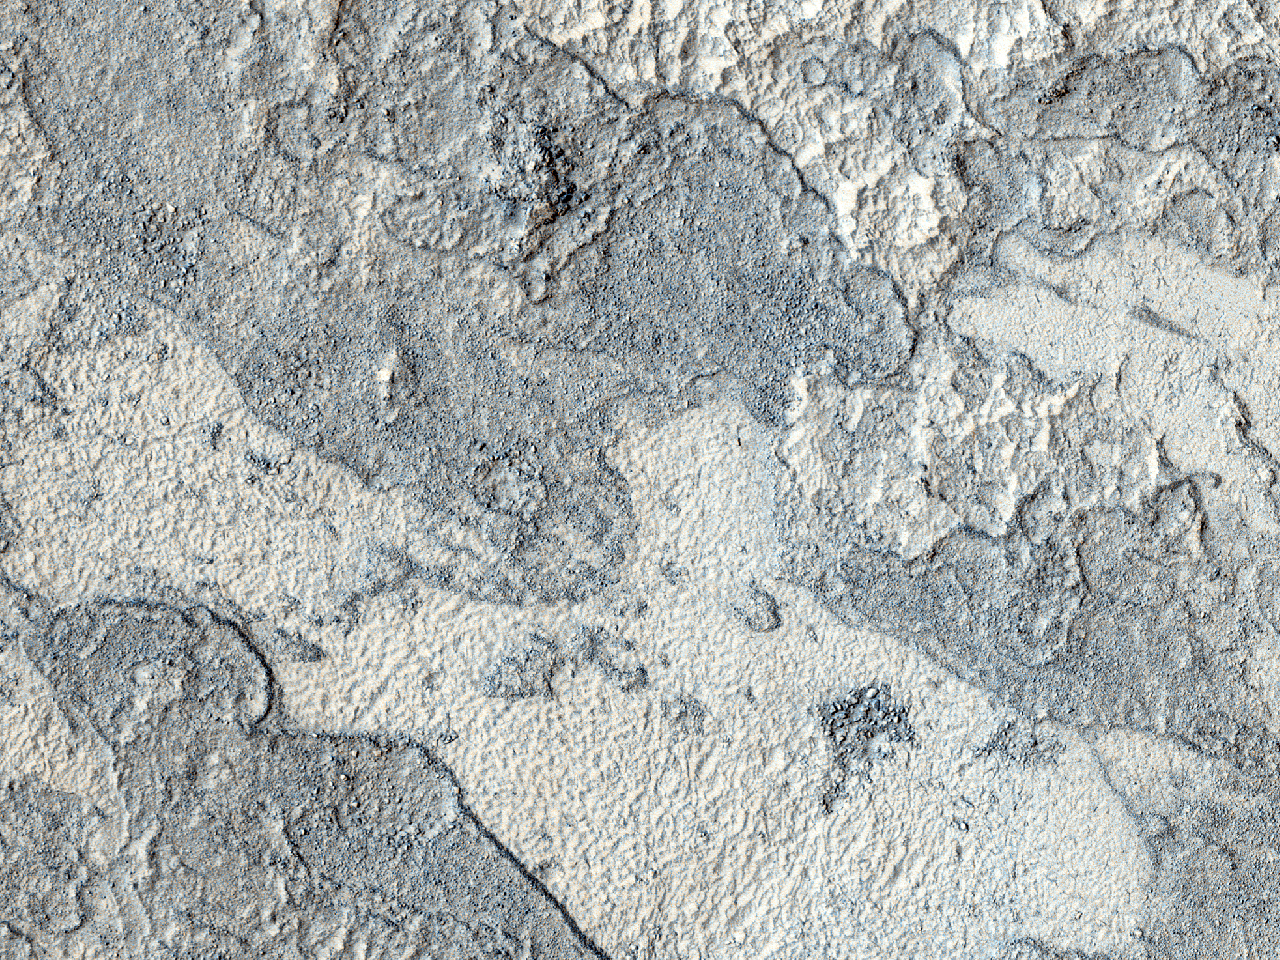 Sziklás lerakódás egy termális jelzésekkel borított kráter aljzatán